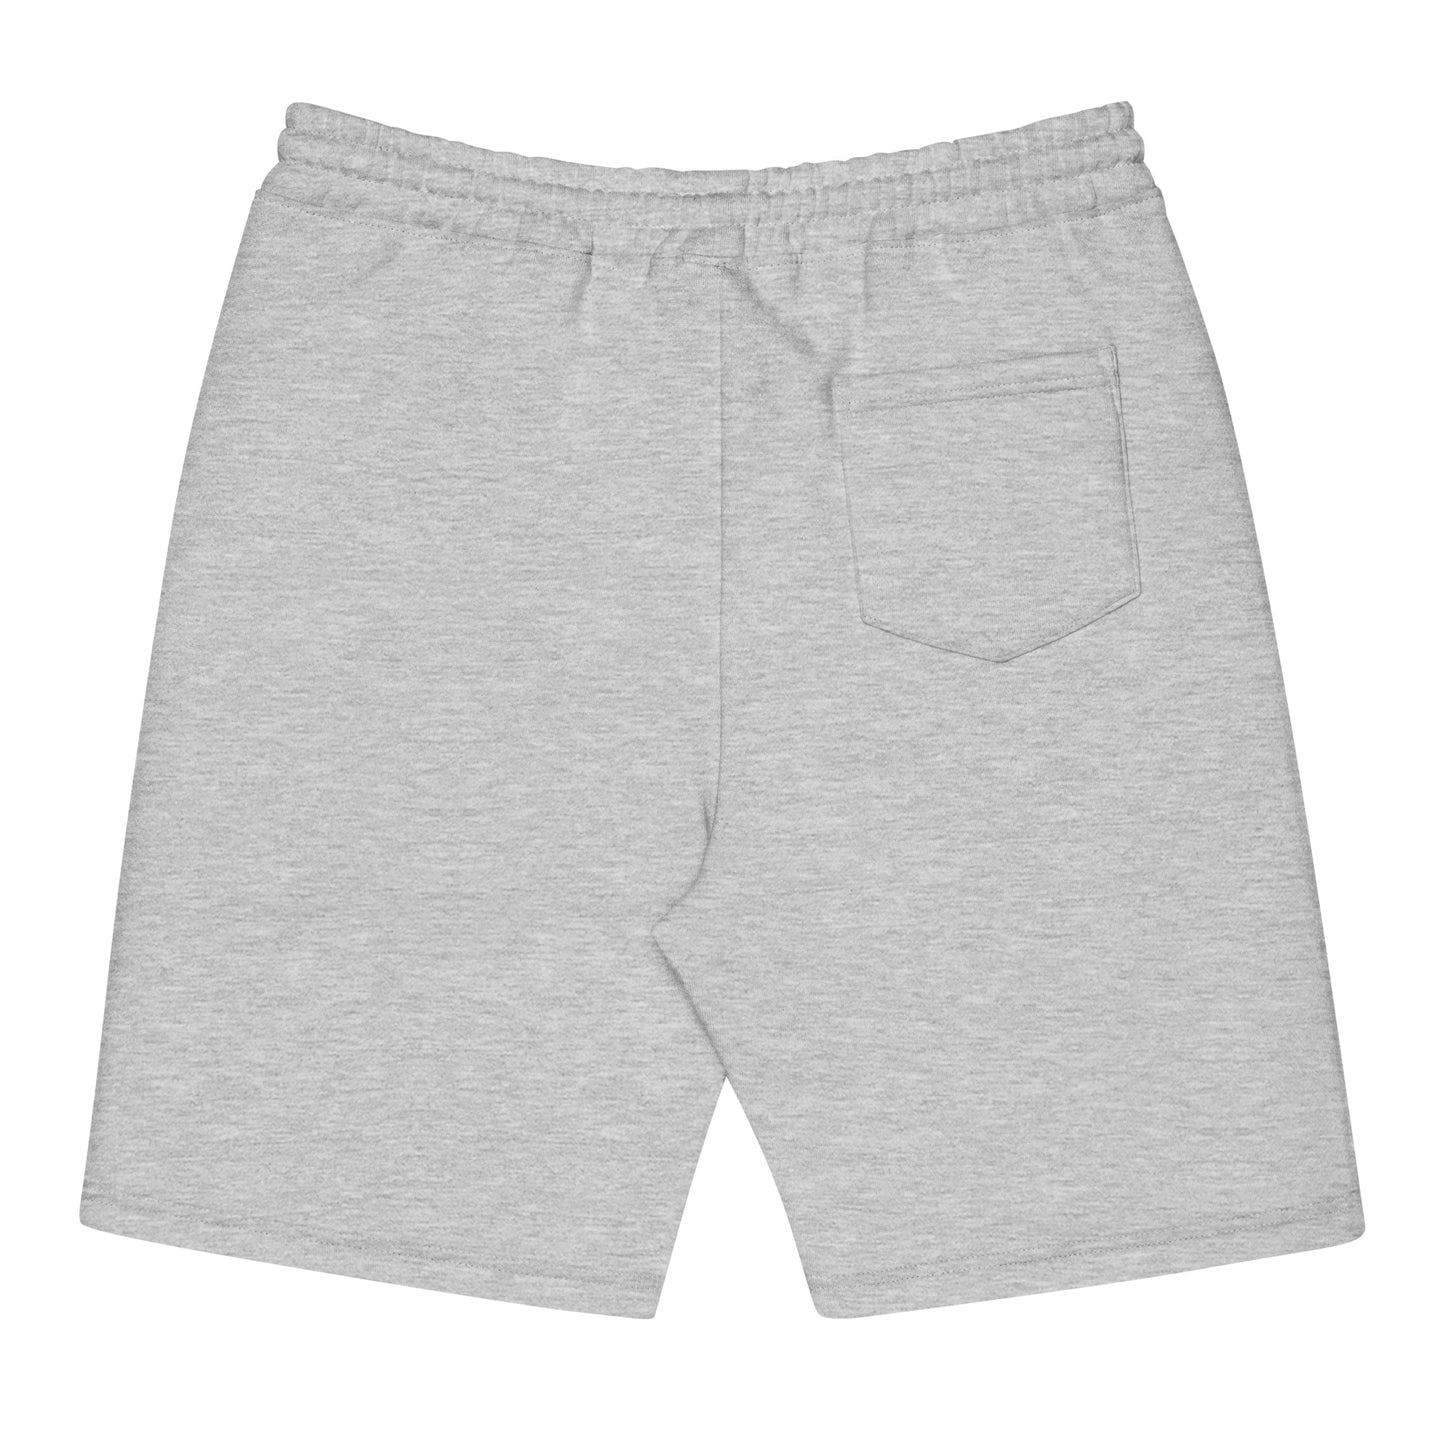 Dr. Grind LAB Men's Fleece Shorts